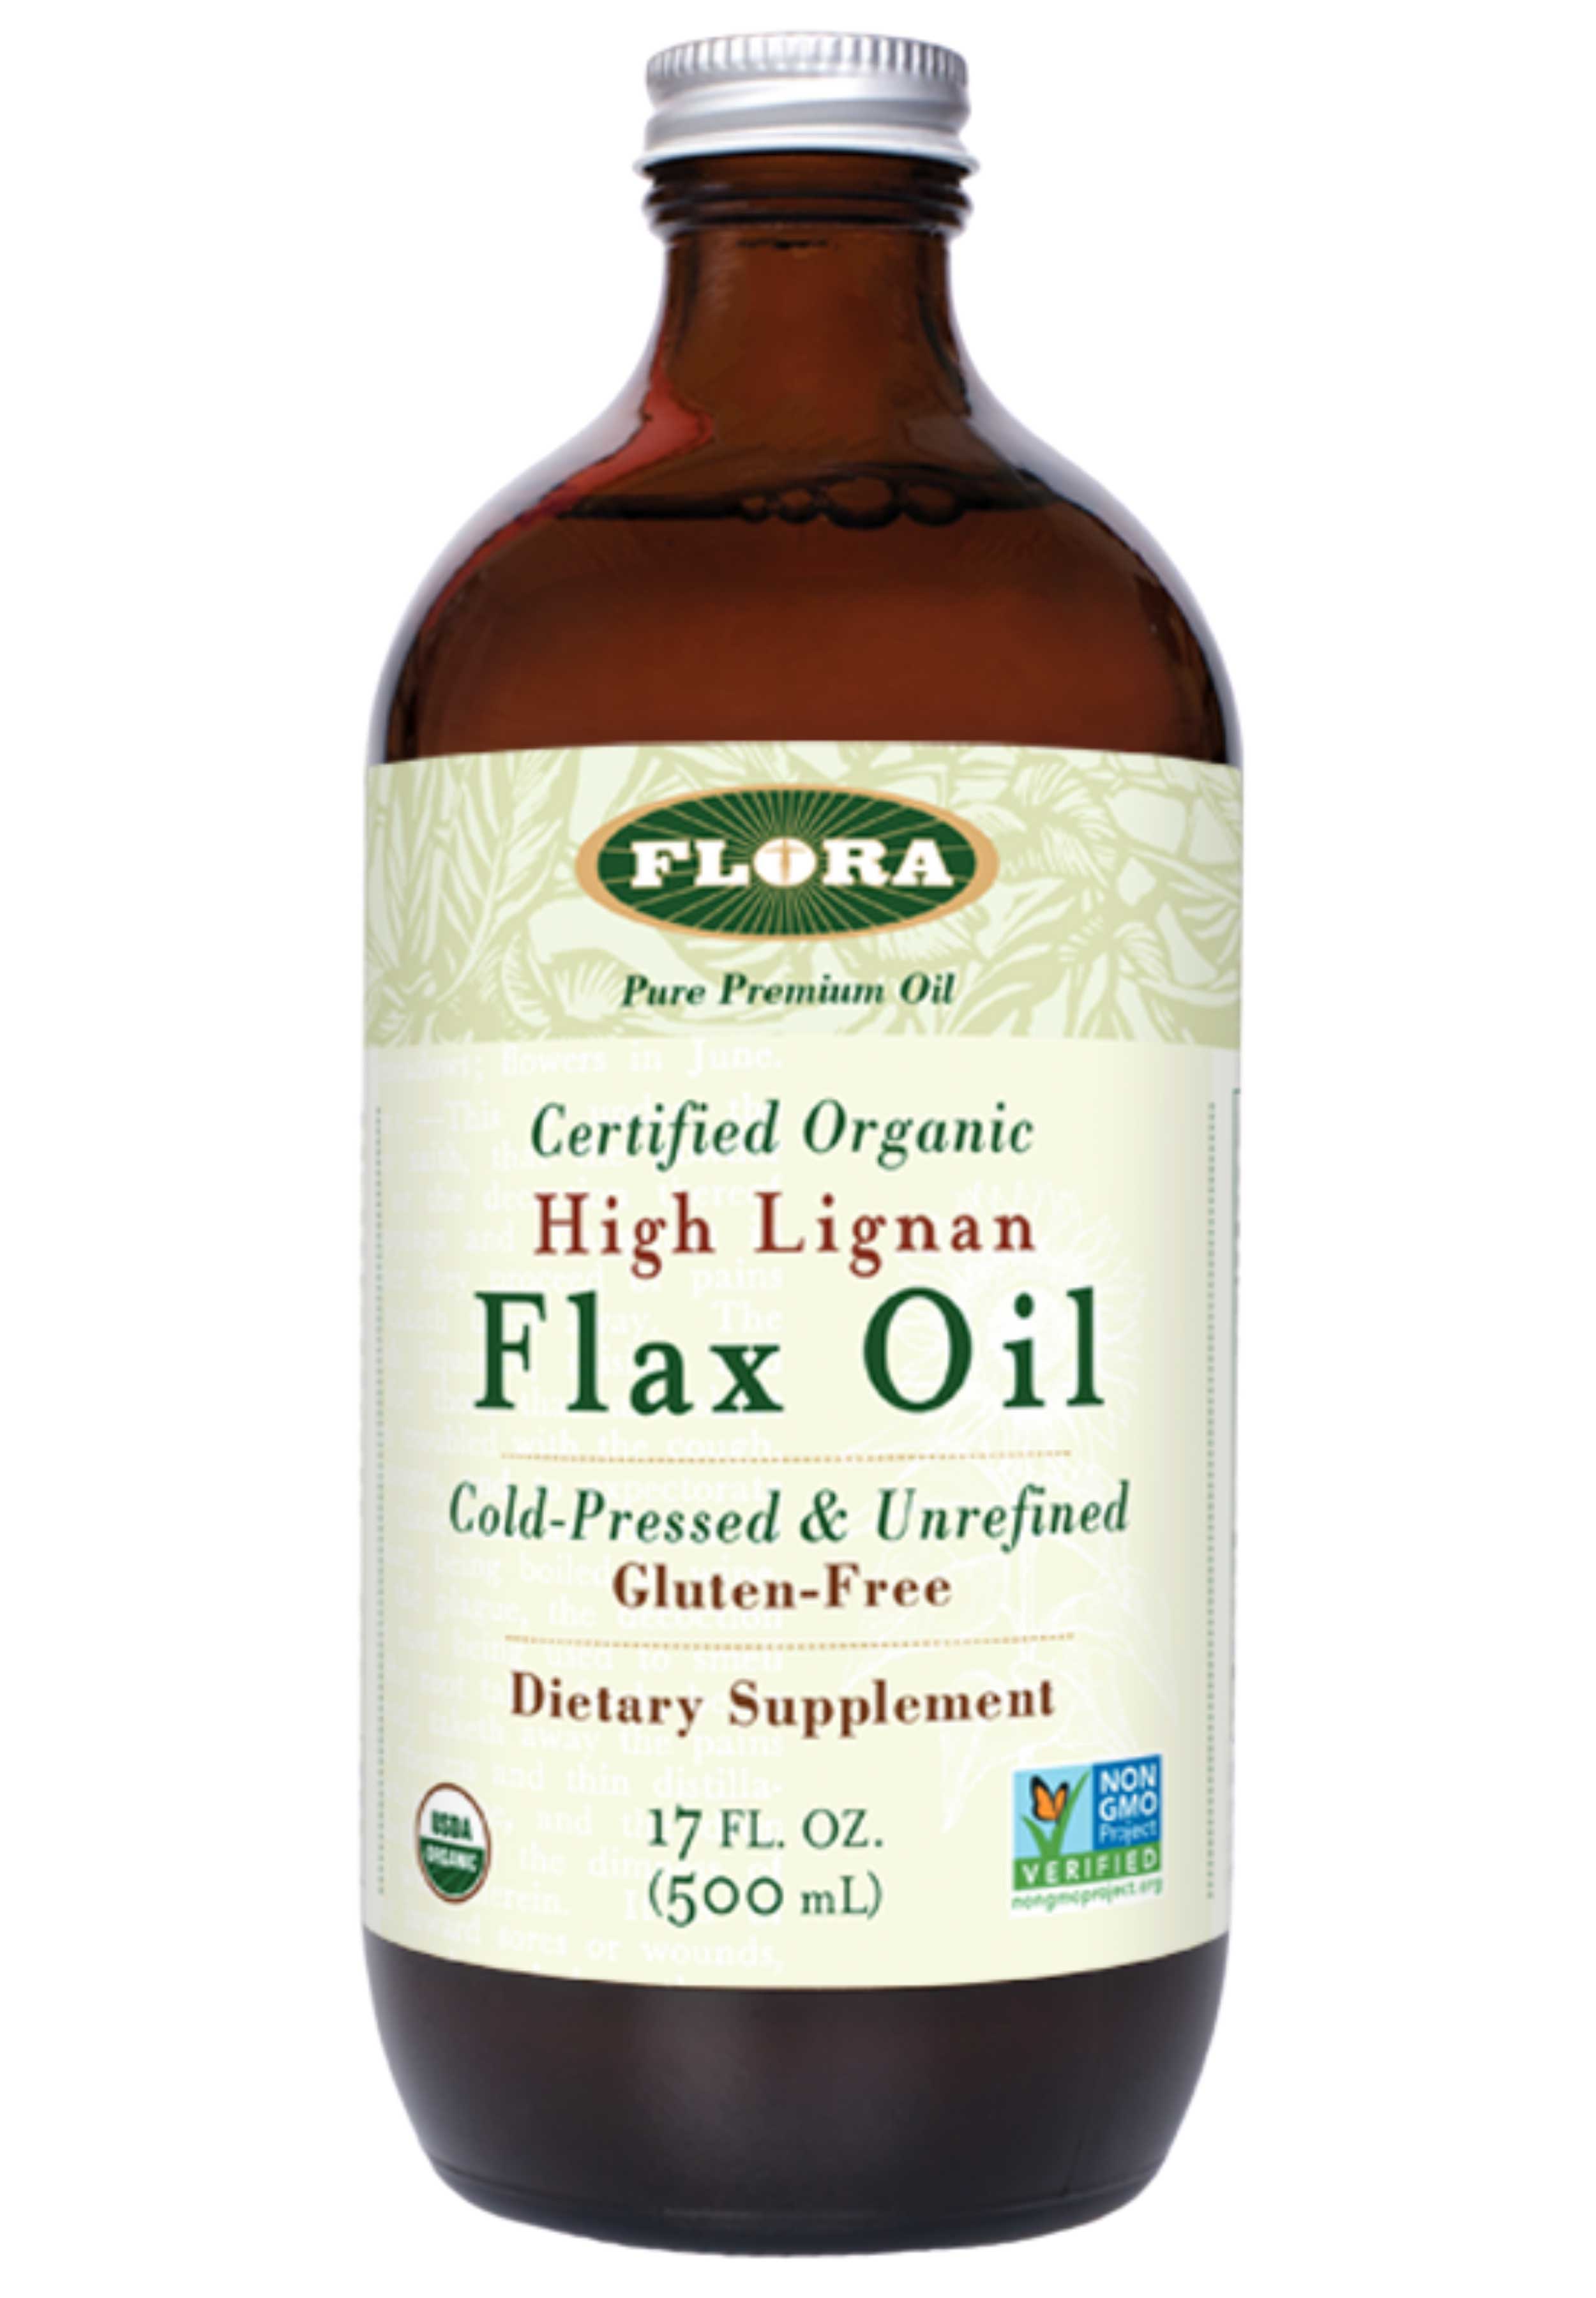 Flora High Lignan Flax Oil